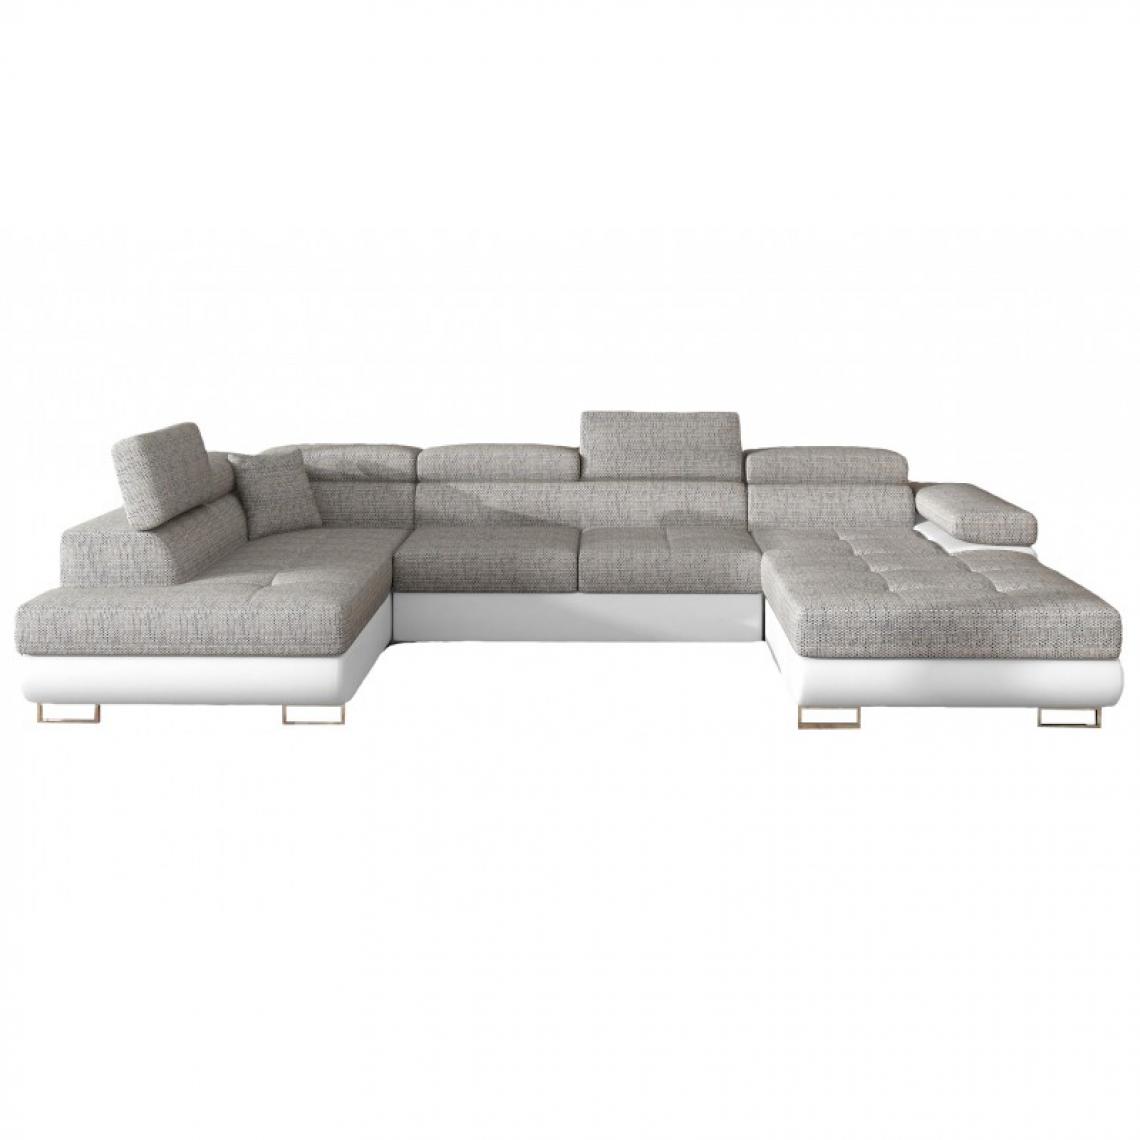 Meubler Design - Canapé Design Convertible Panoramique U Rodrigo - Angle du canapé - Gauche - Tissu gris clair/ PU blanc - Canapés